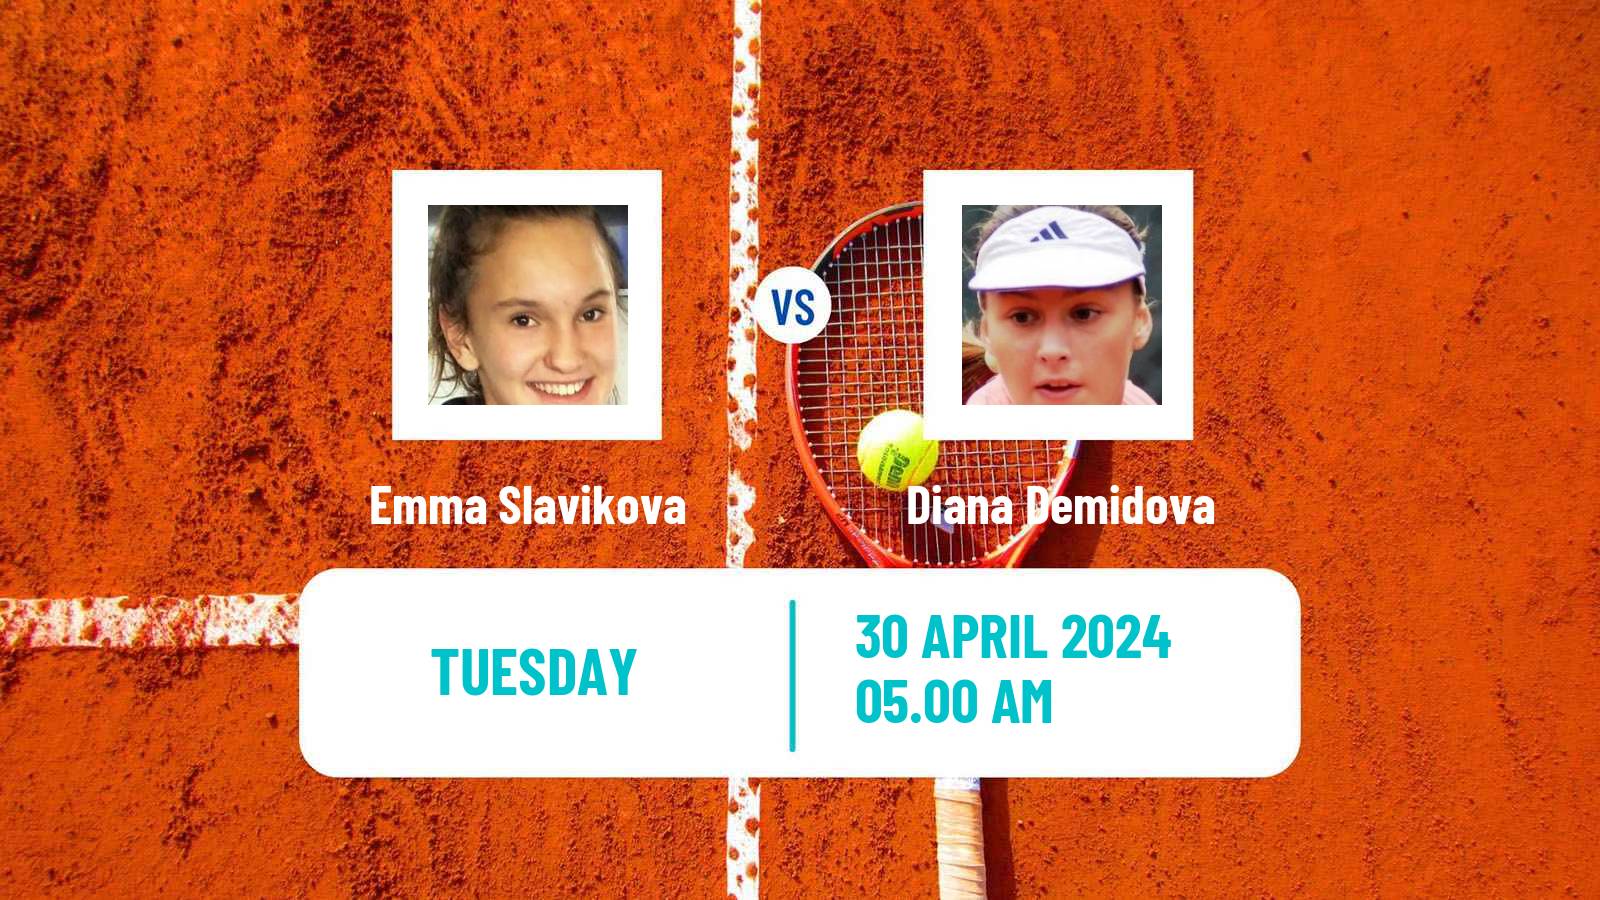 Tennis ITF W35 Hammamet 7 Women Emma Slavikova - Diana Demidova